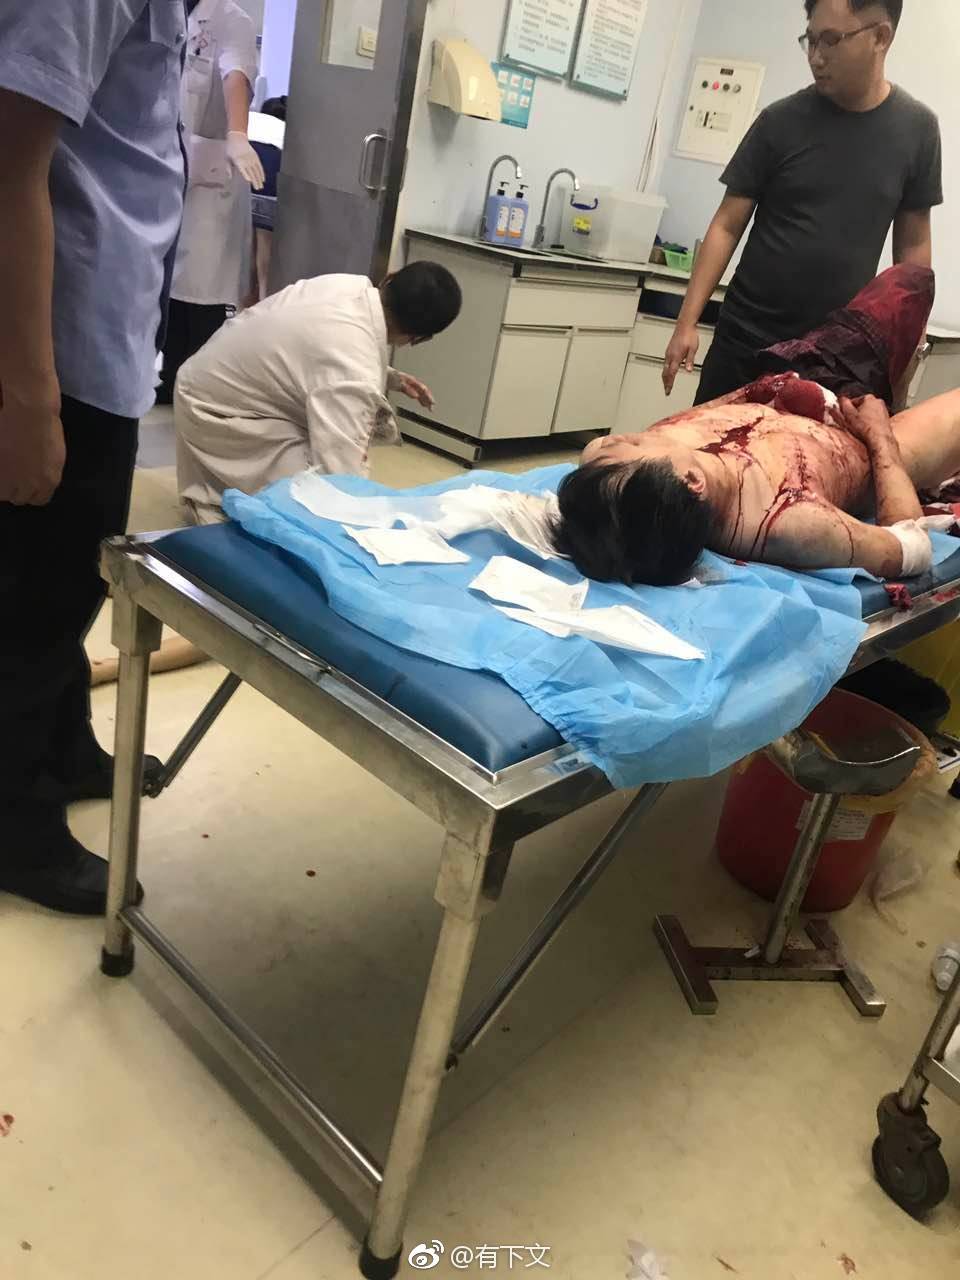 恐怖!深圳宝安沃尔玛昨夜发生持刀砍人事件,致2死9伤(附视频)